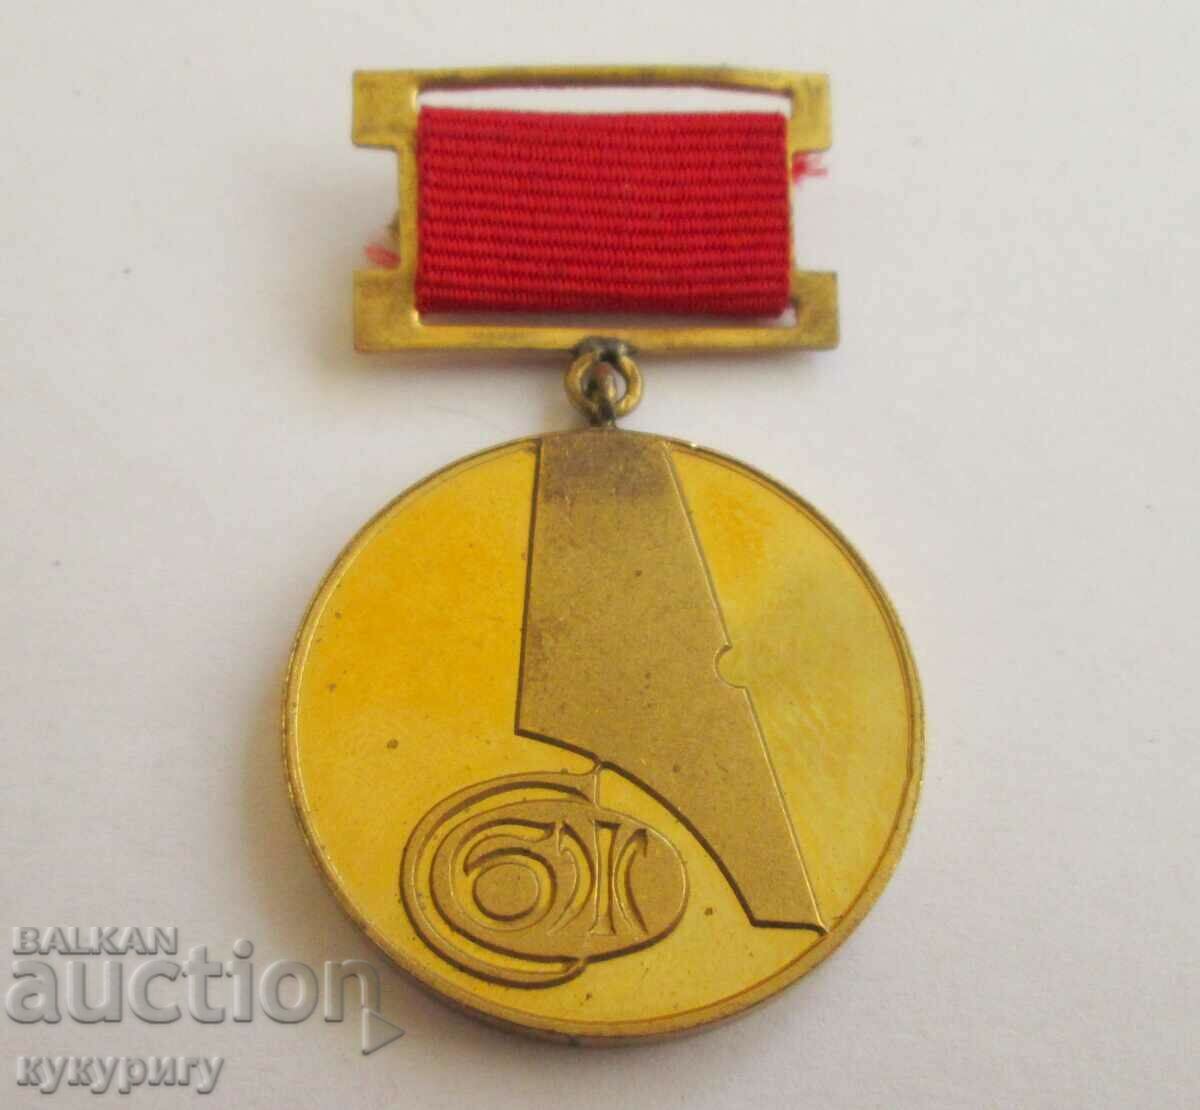 Μετάλλιο Star Sots τιμητικό σήμα των δημοσιογράφων του SBZ